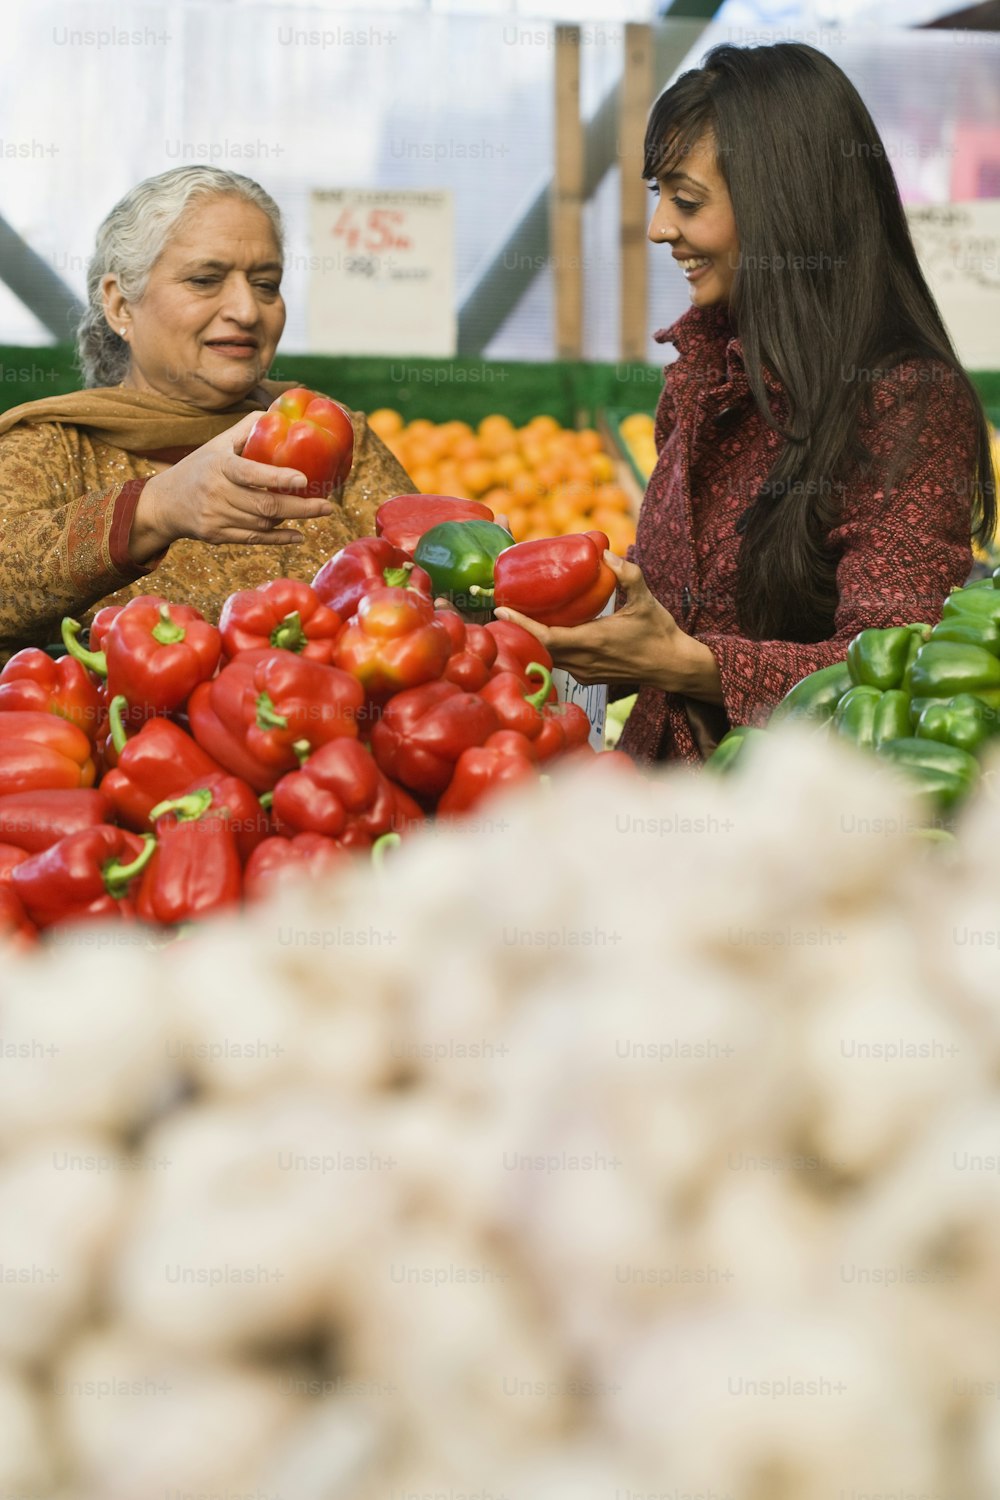 Un couple de femmes debout l’une à côté de l’autre près d’un tas de légumes